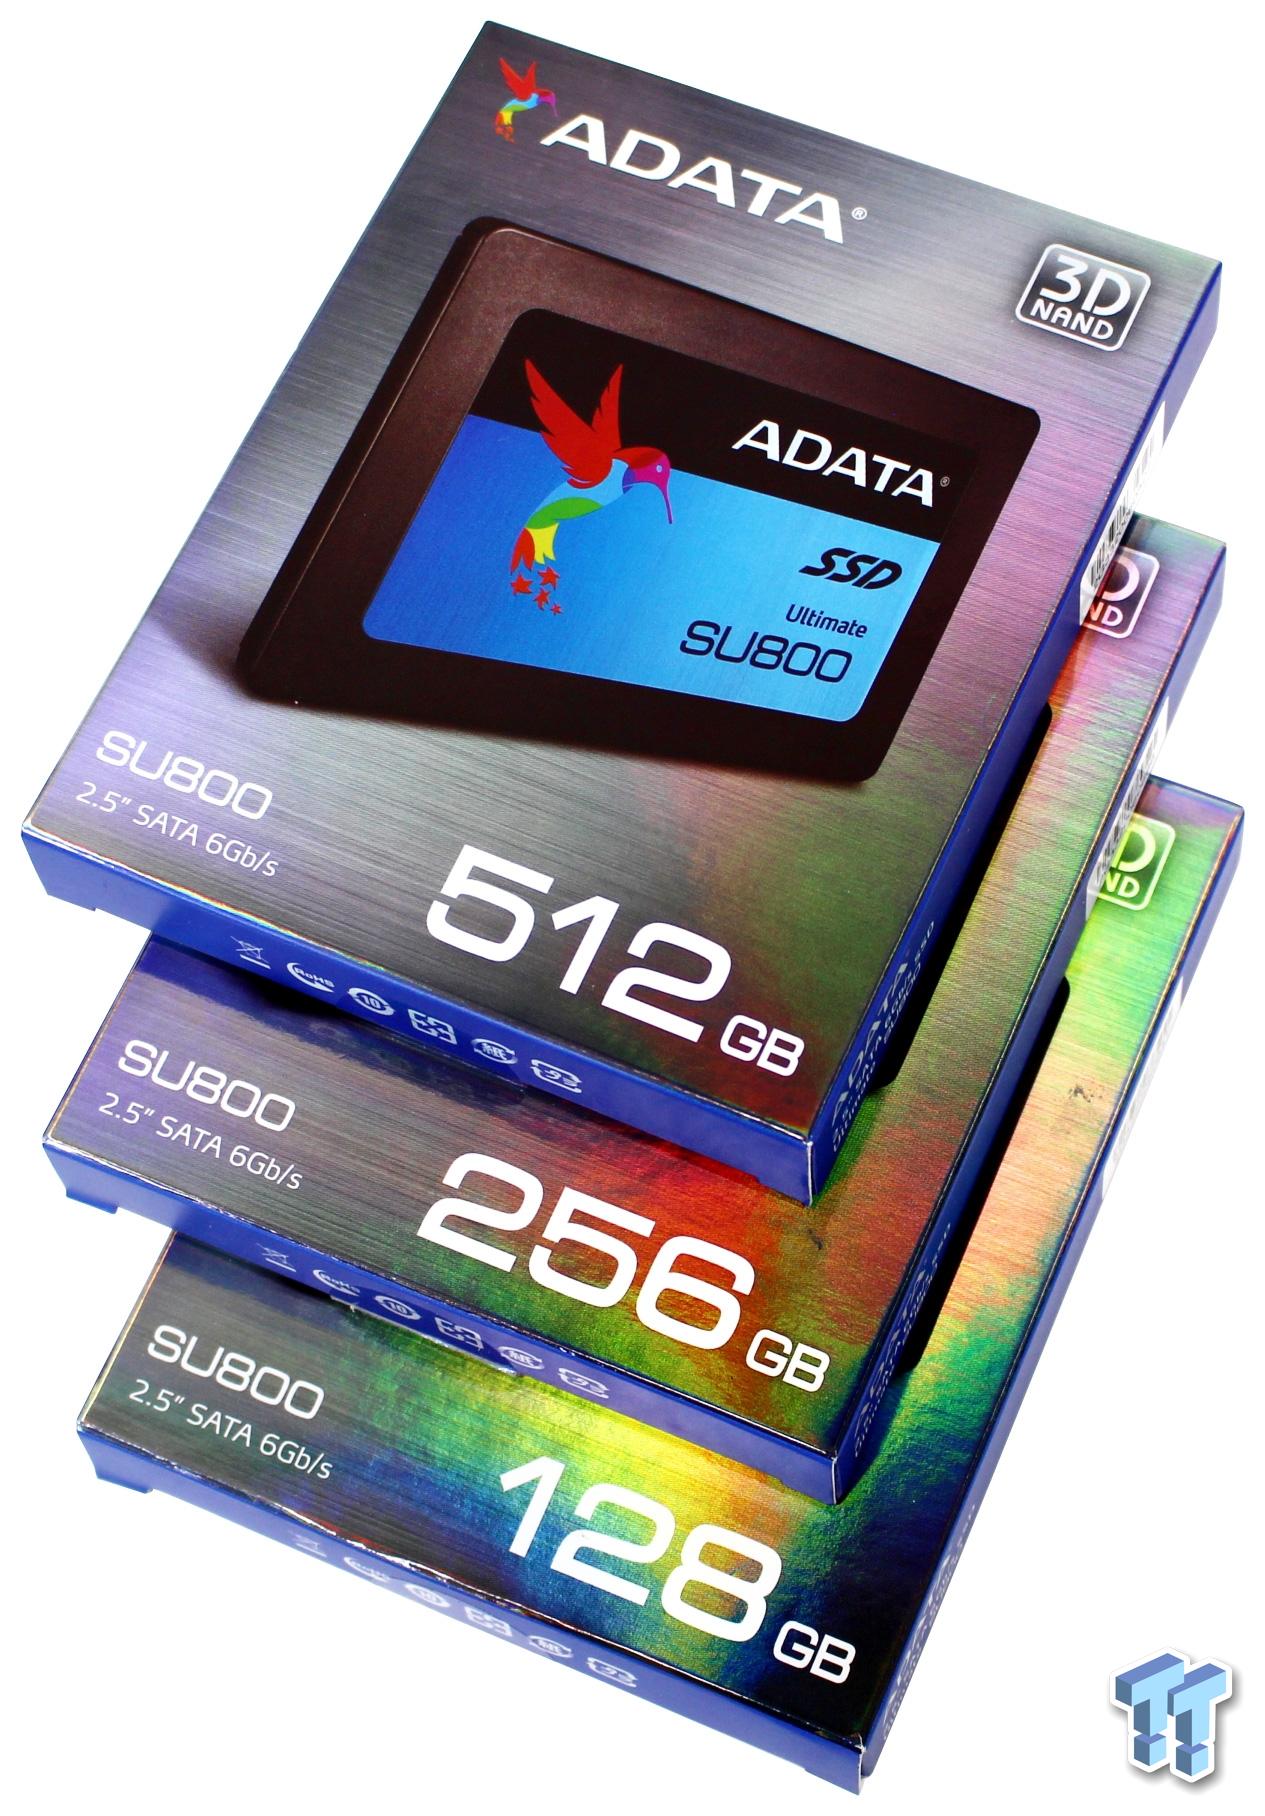 ADATA SU800 SATA III SSD Review